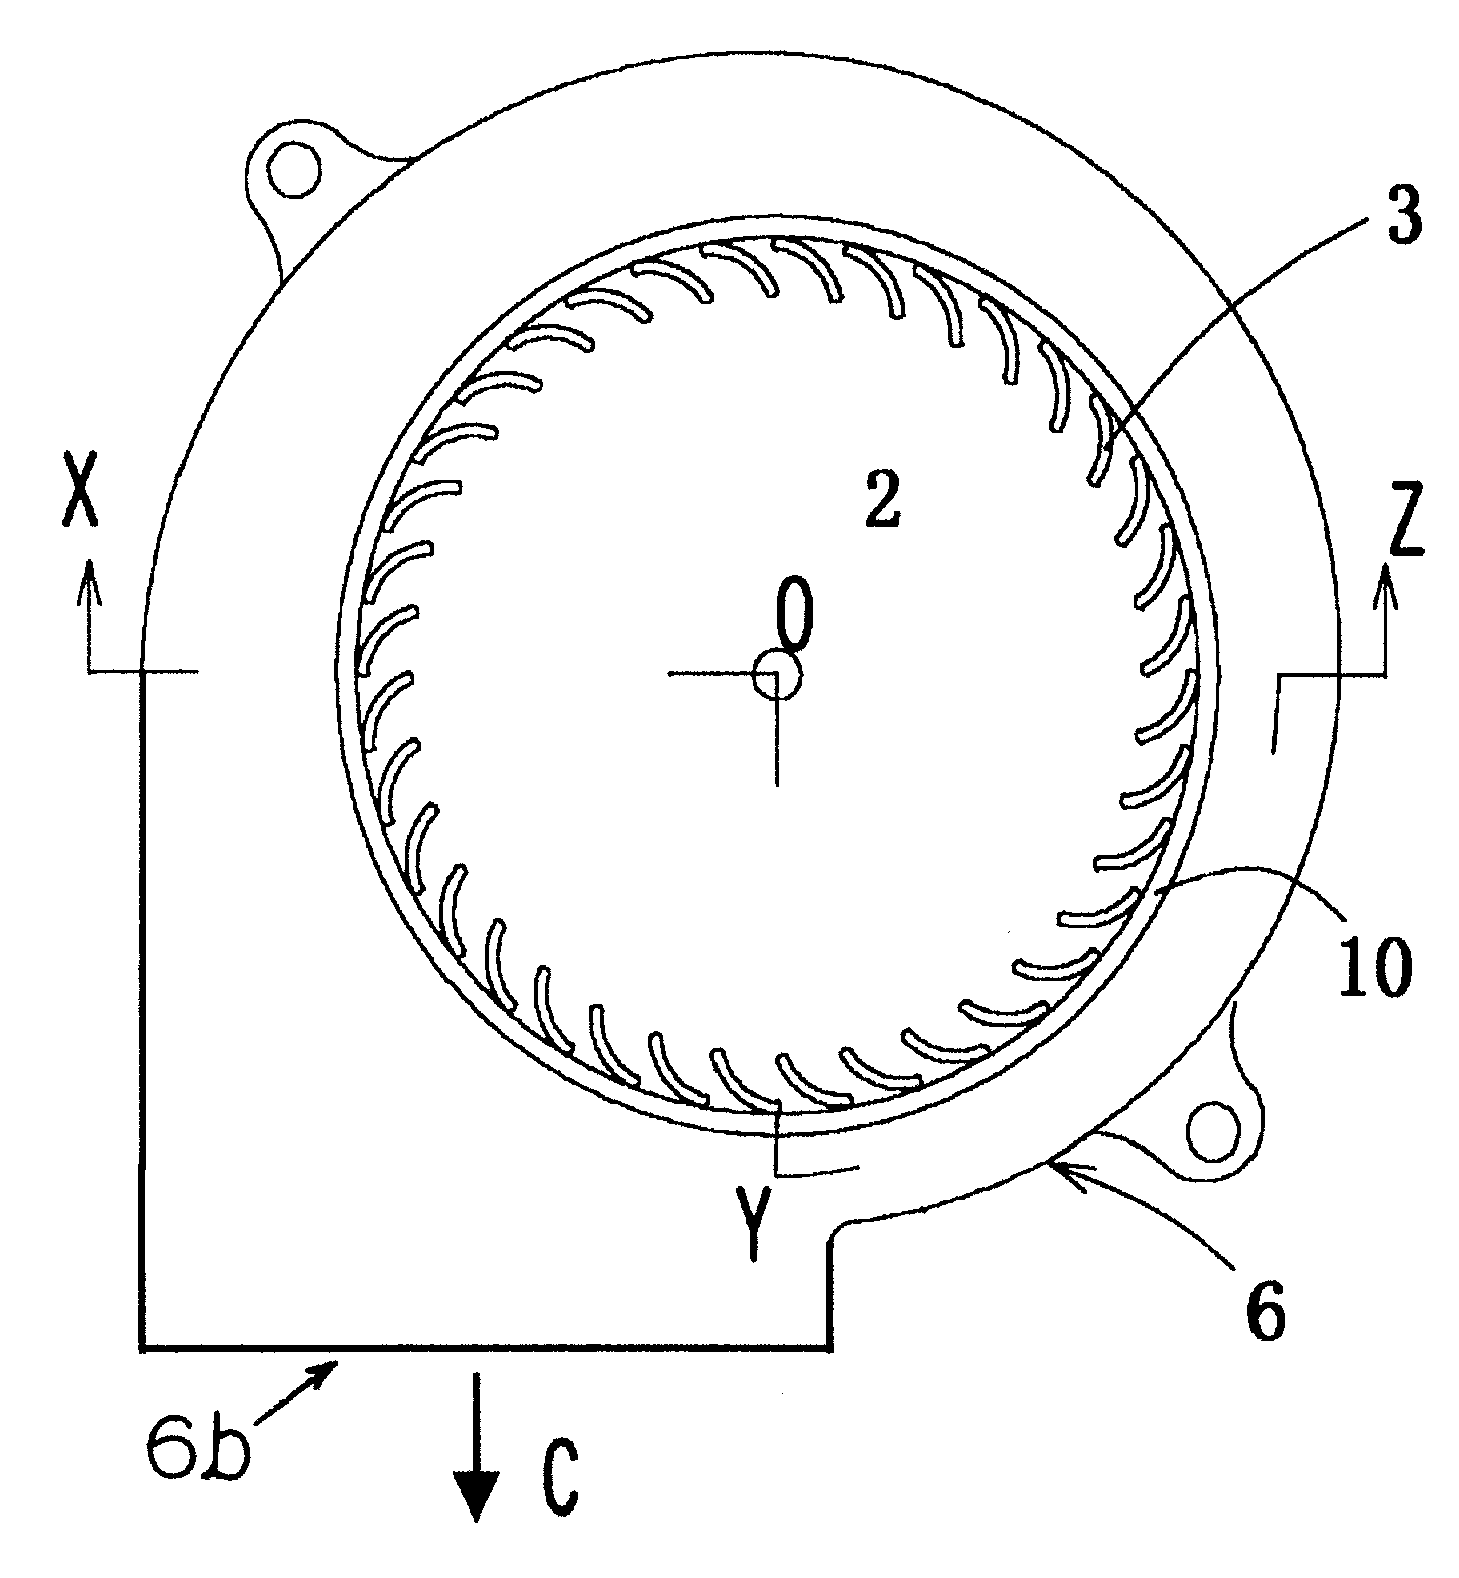 Fan impeller and fan motor